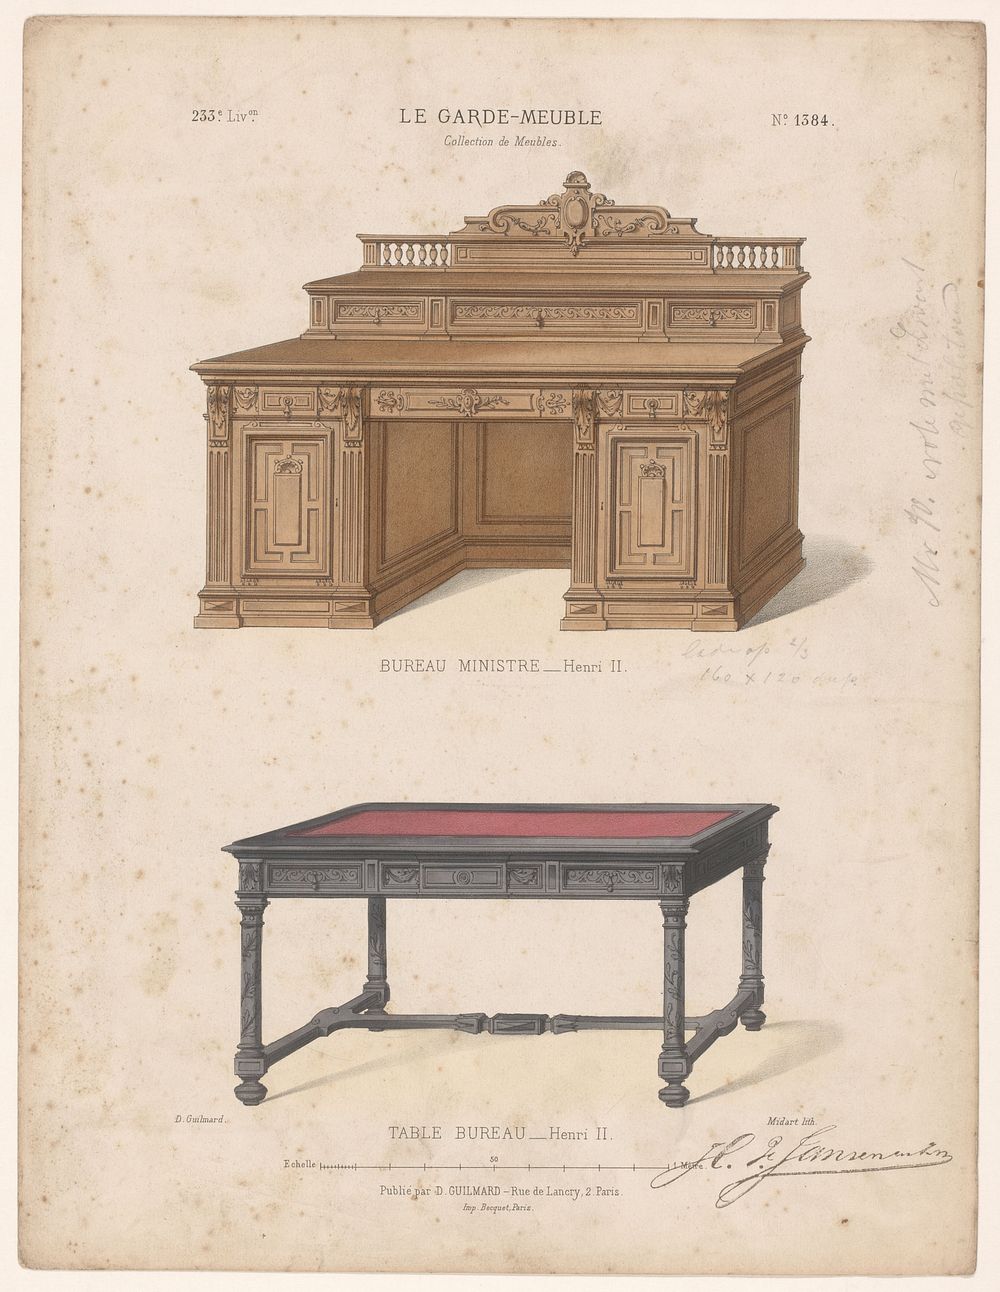 Twee bureaus (1839 - 1885) by Midart, Becquet and Désiré Guilmard